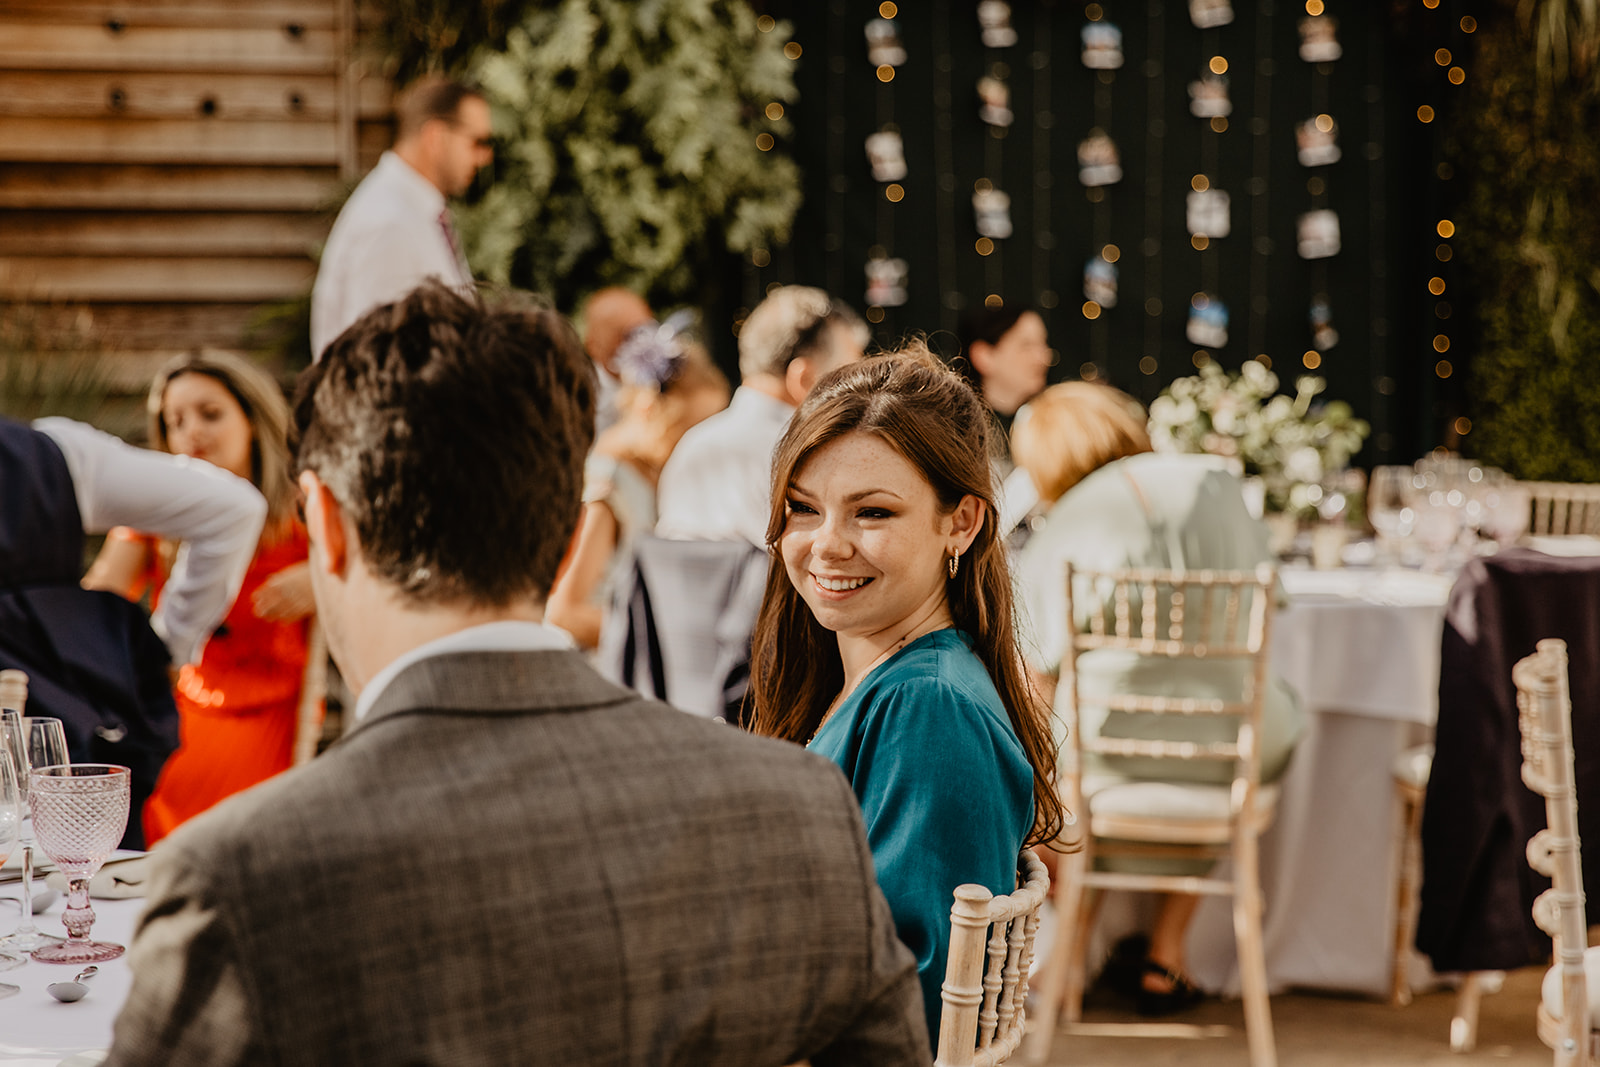 Wedding reception at a RHS Gardens Wisley Wedding. By Olive Joy Photography